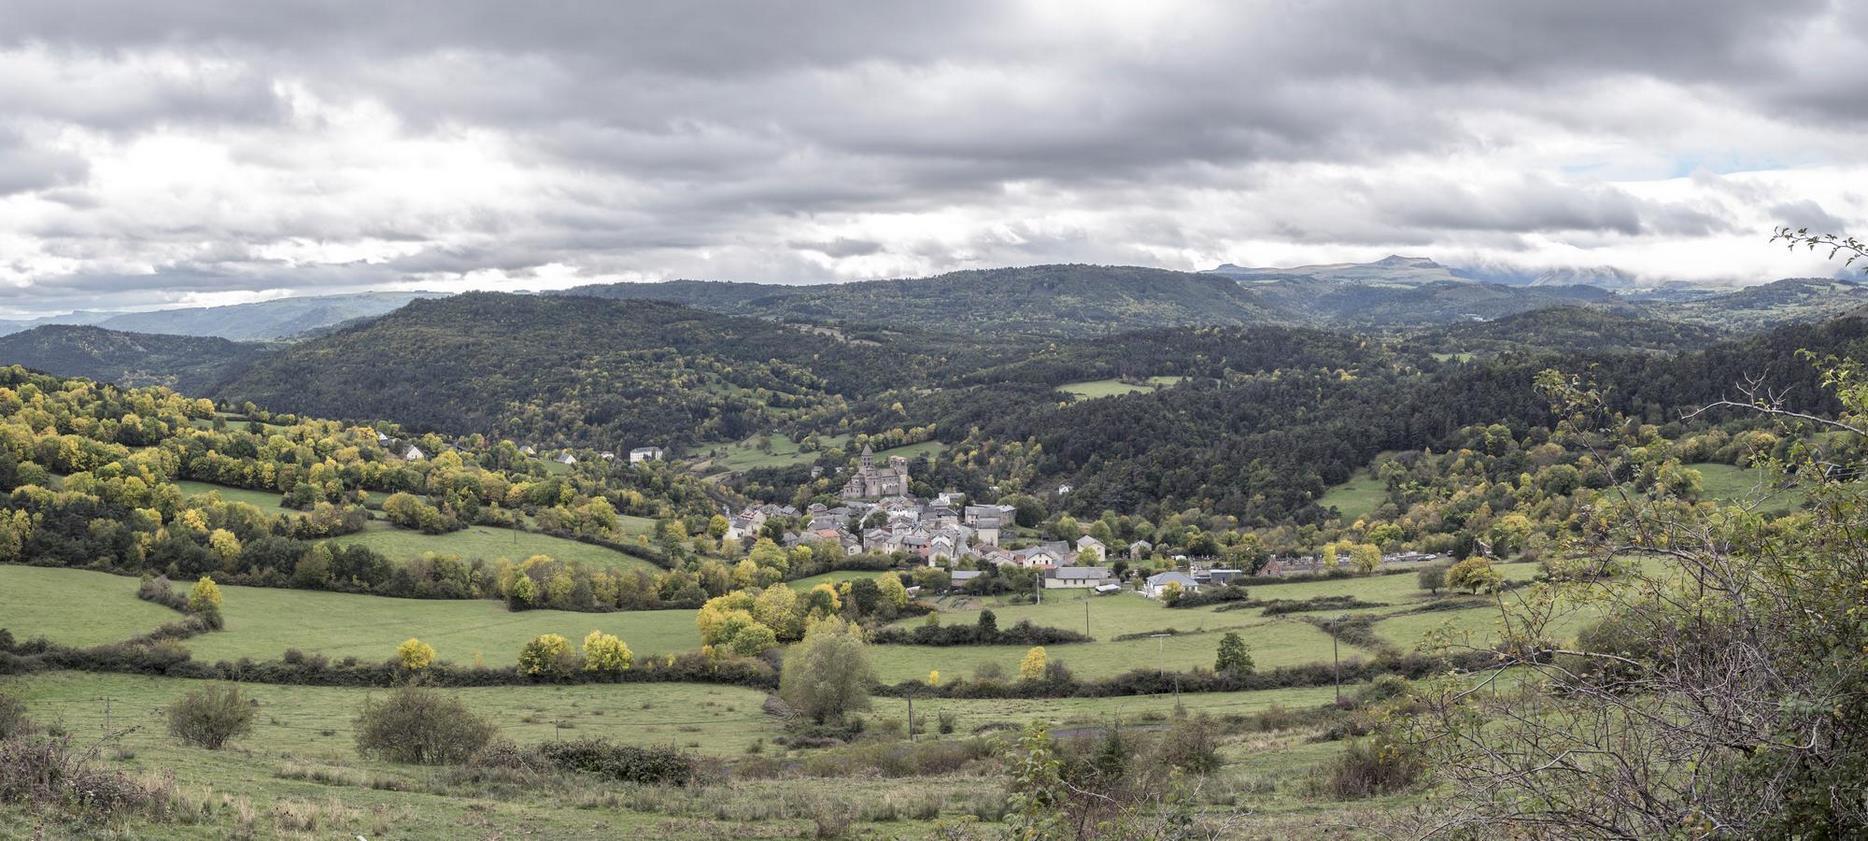 Saint Nectaire - Le Village dans la campagne d'Auvergne